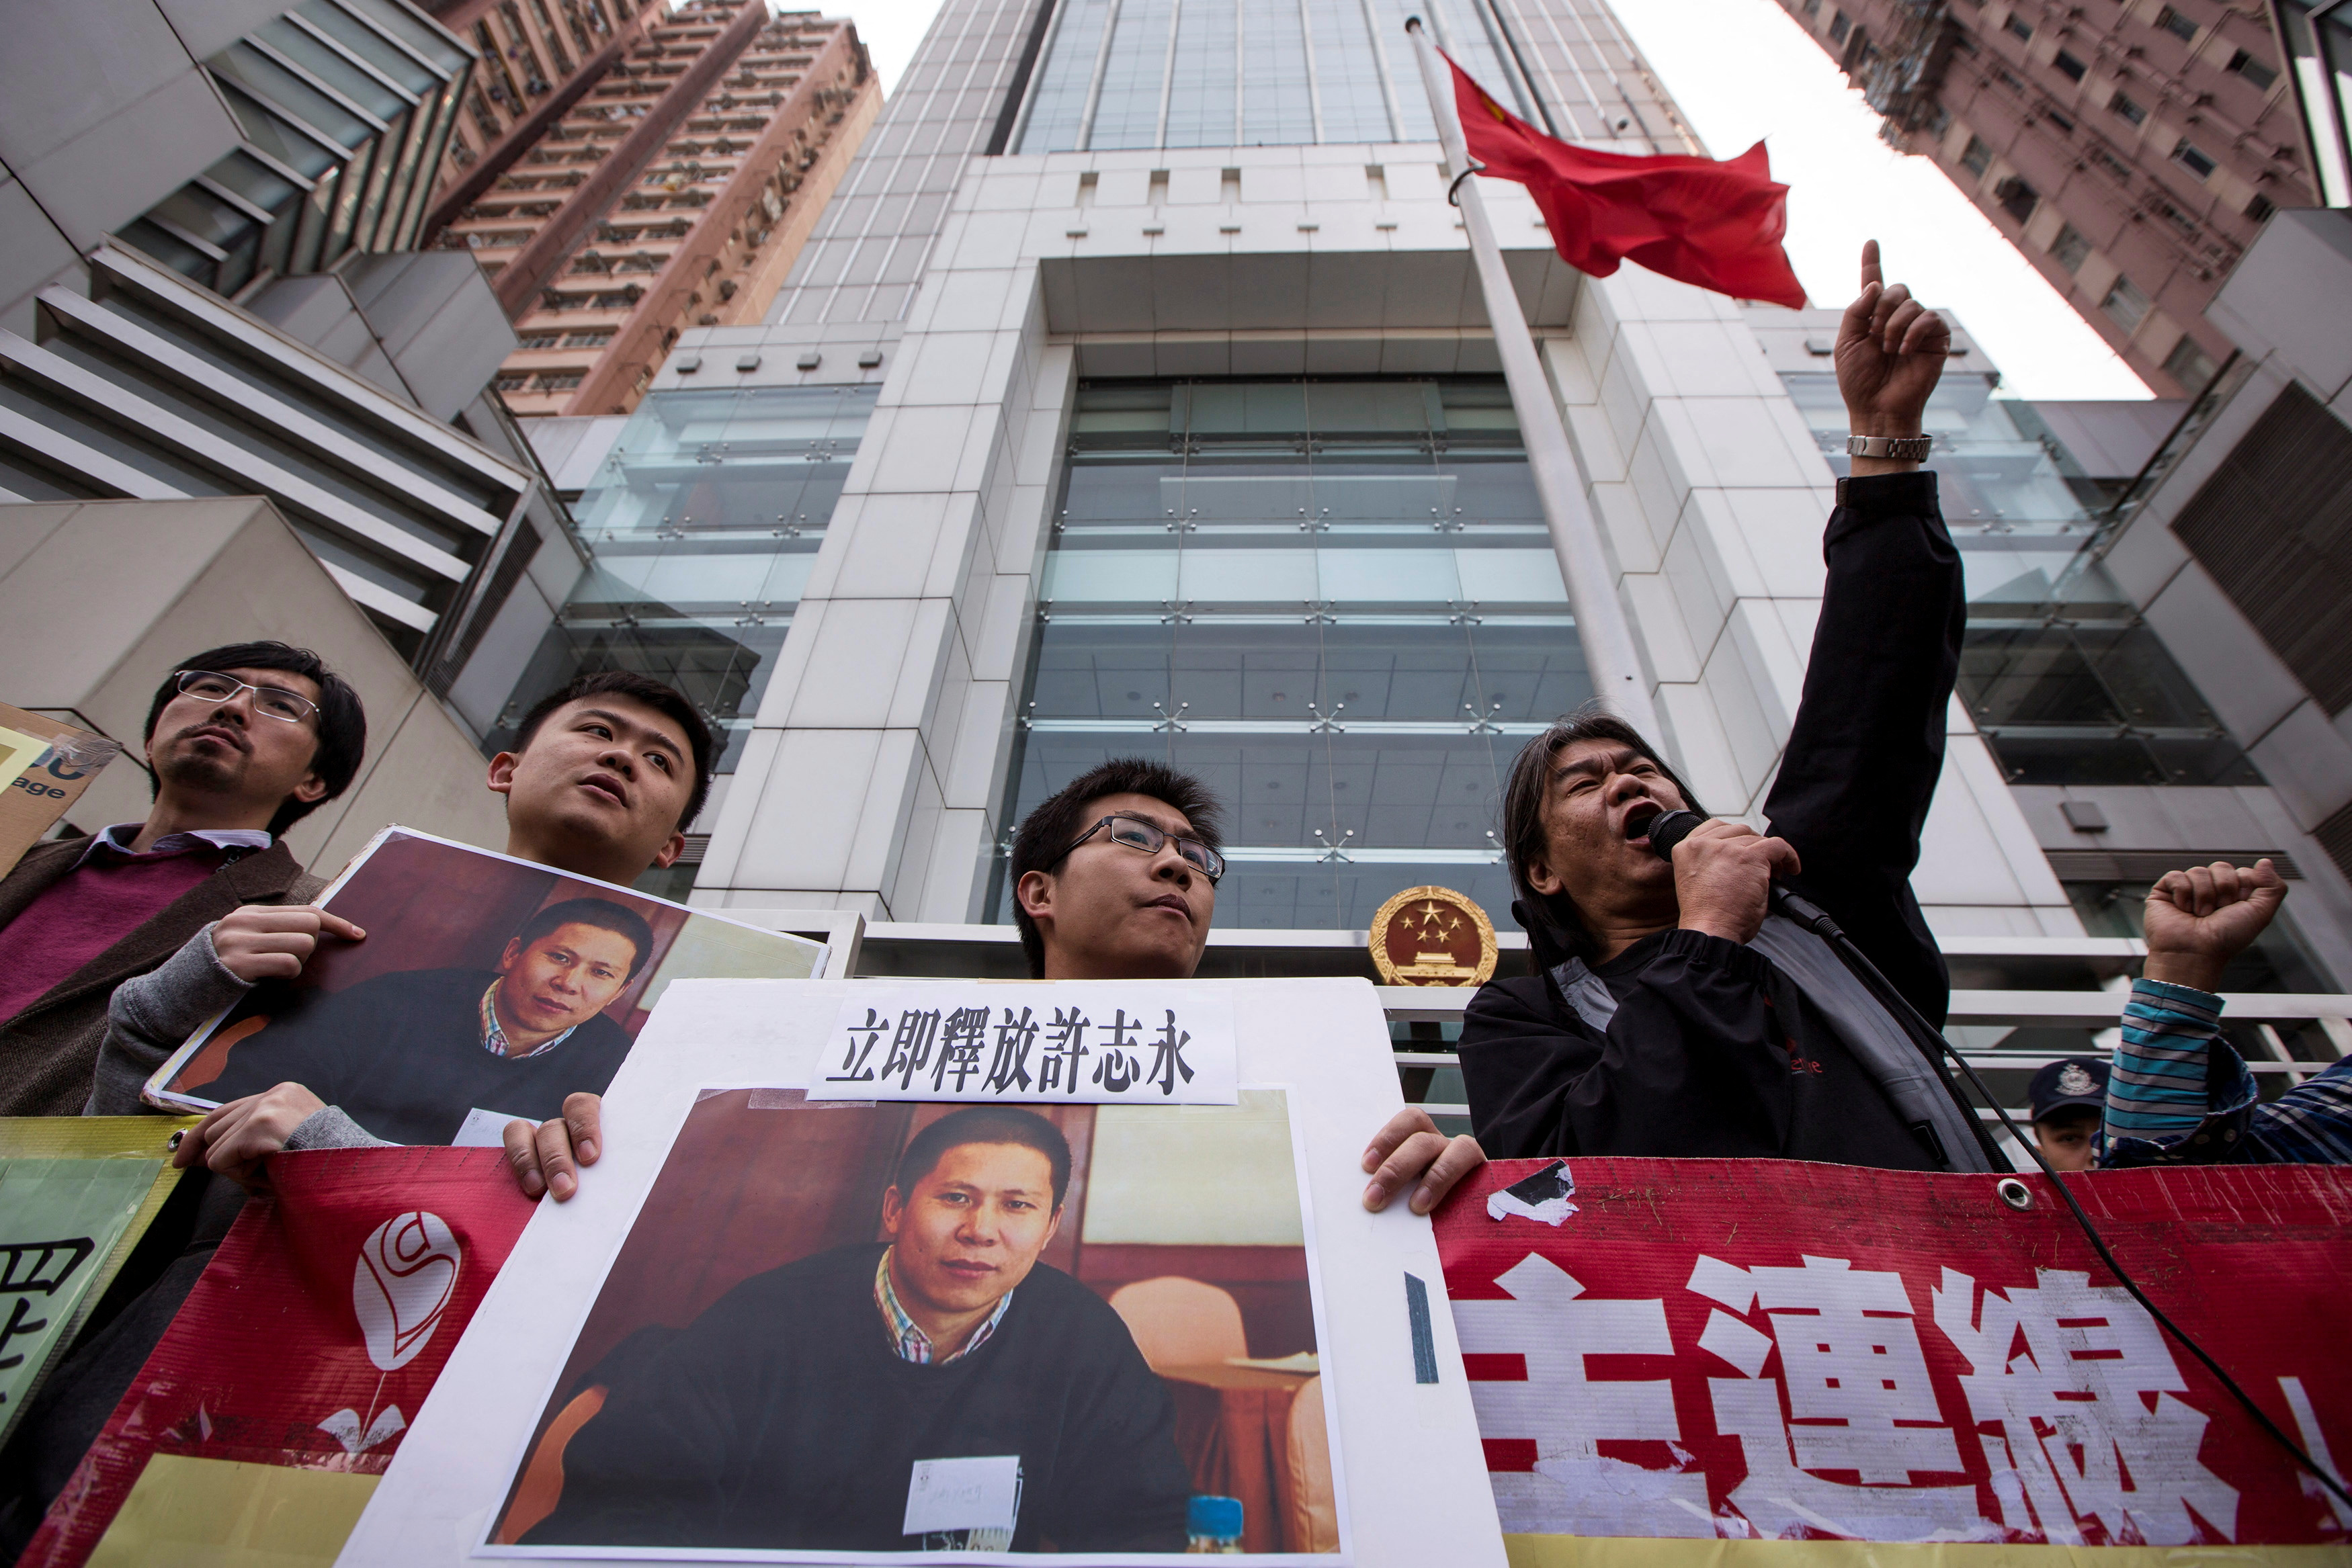 El régimen chino inició un juicio secreto contra dos destacados defensores de derechos humanos